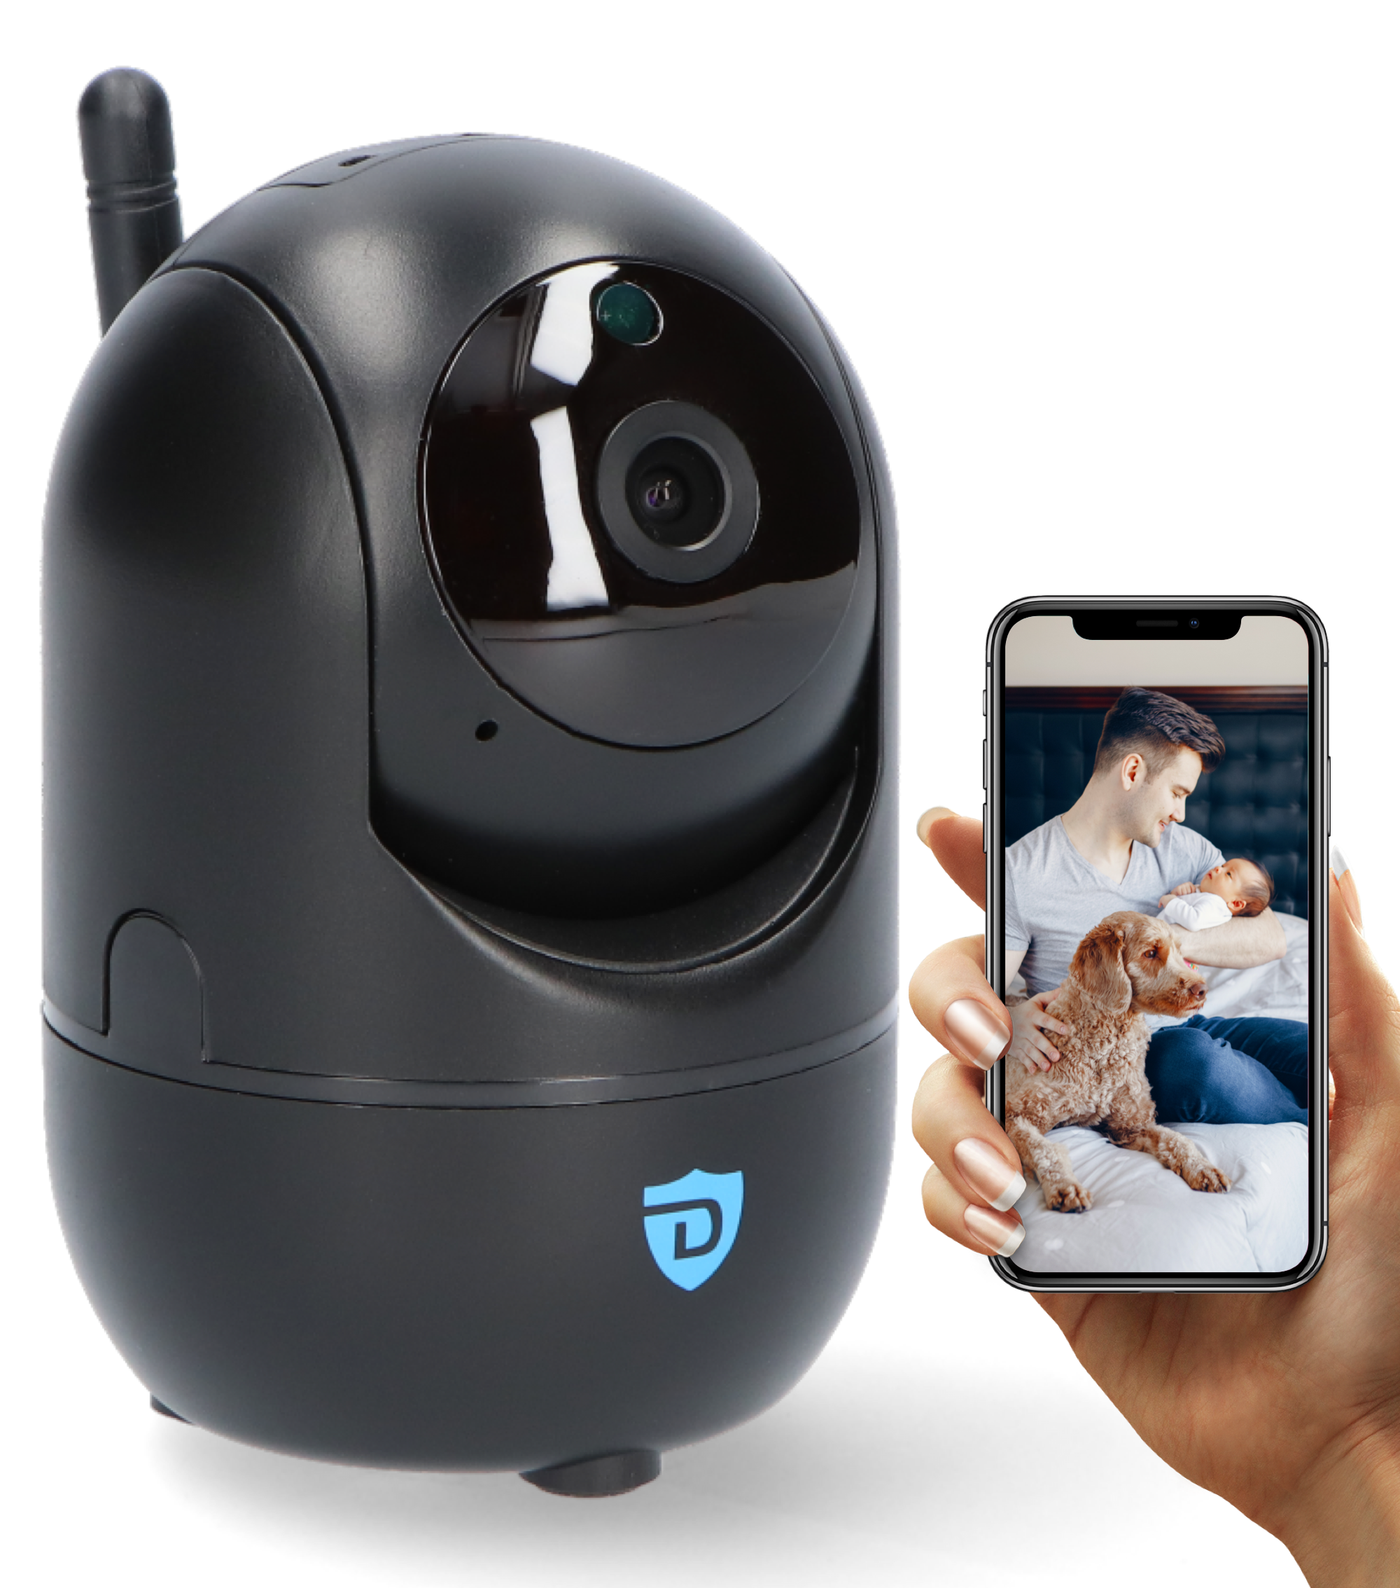 Detepo® Slimme Wifi Beveiligingscamera voor Baby en Huisdier - Bestuurbaar met App - Full HD 2 Megapixel - Babyfoon met bewegingsdetectie en Automatisch Volgen van uw Baby Huisdier - Incl. Gratis App en Nederlandse Handleiding